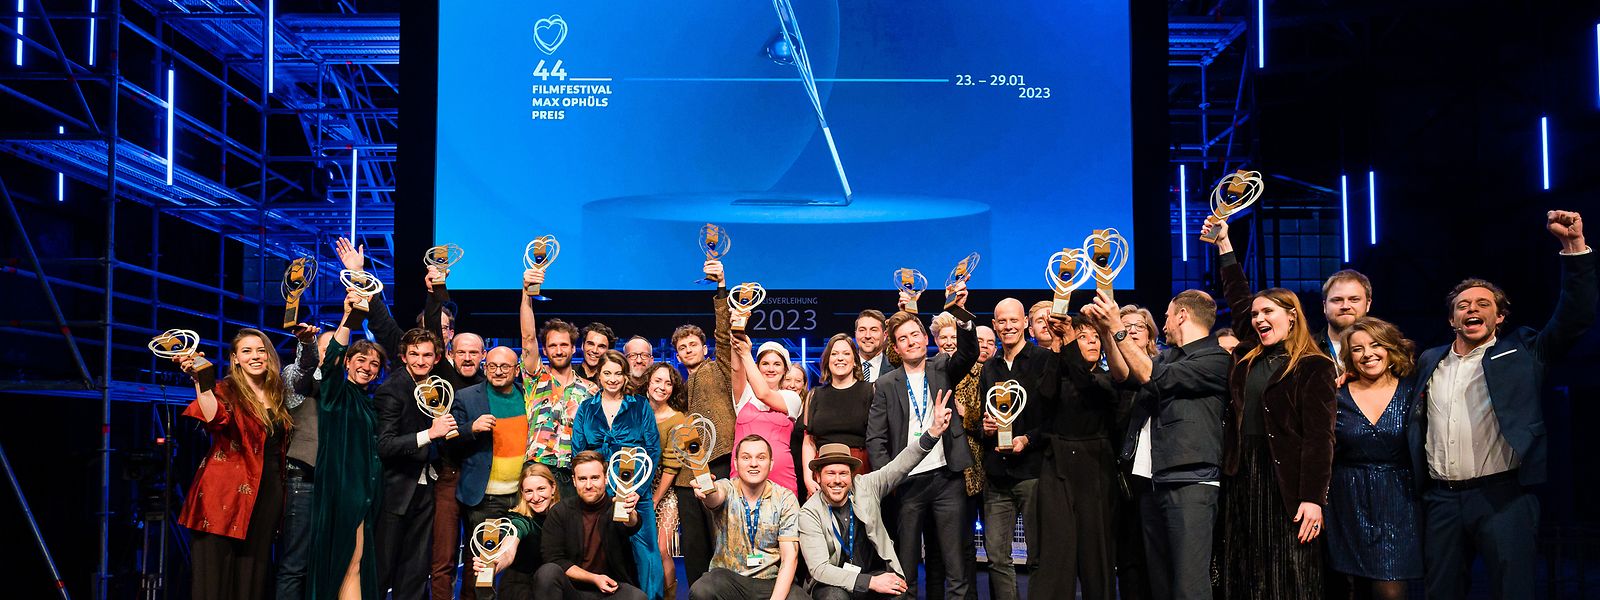 Die Preisträger des 44. Filmfestival Max Ophüls Preis feiern auf der Bühne. 